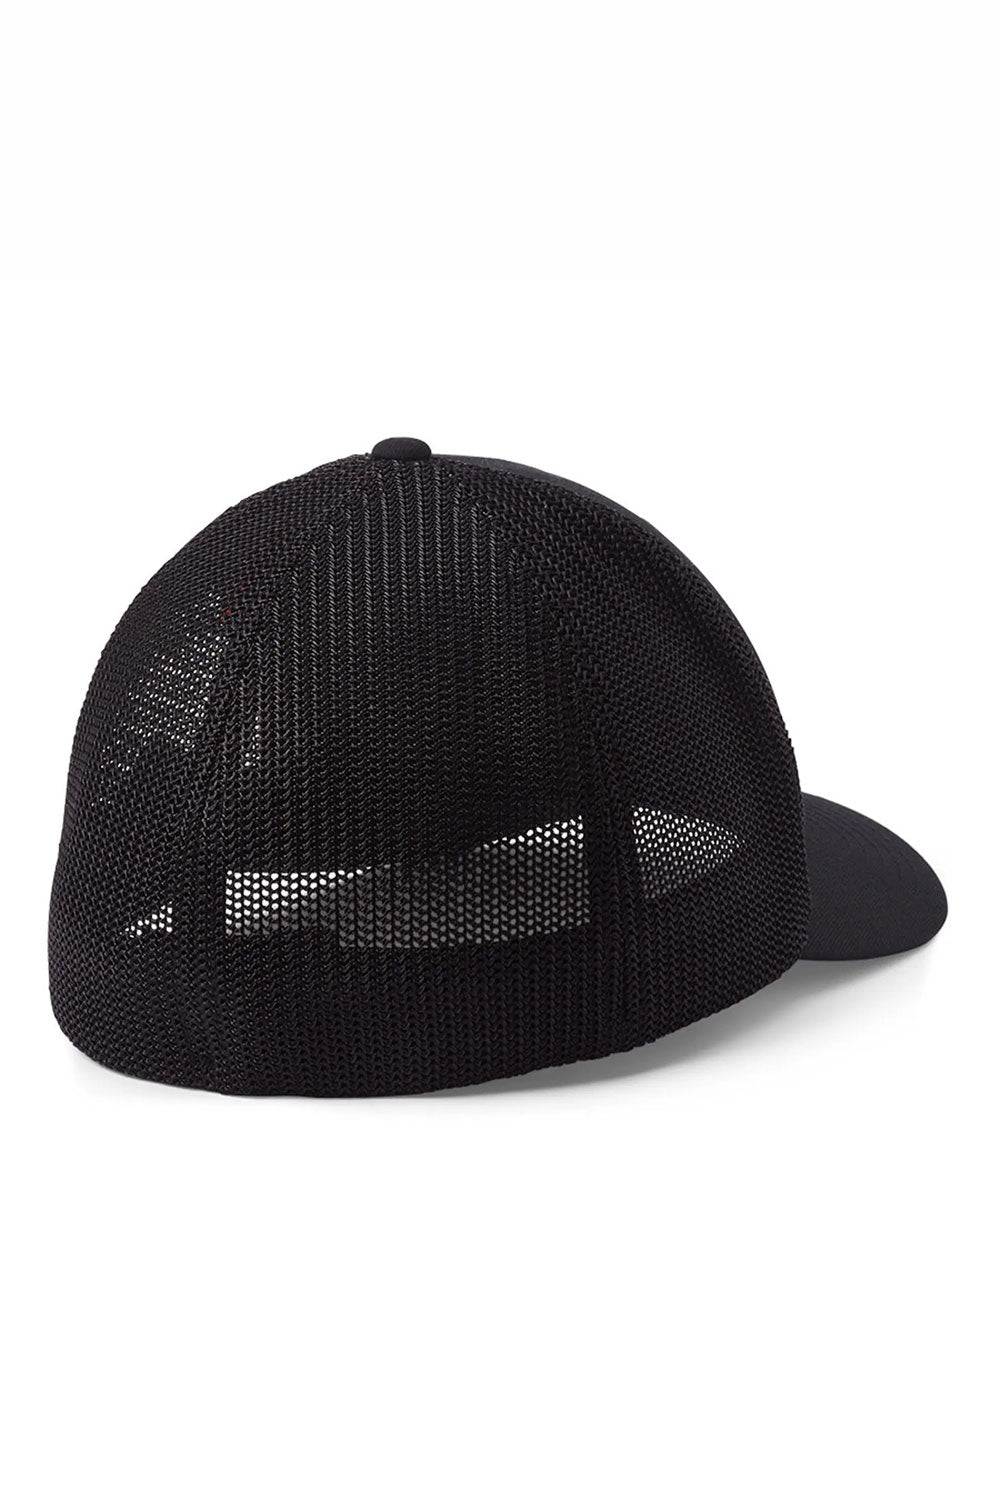 קולומביה כובע מצחייה Mesh בצבע שחור לגברים-Columbia-S-M-נאקו